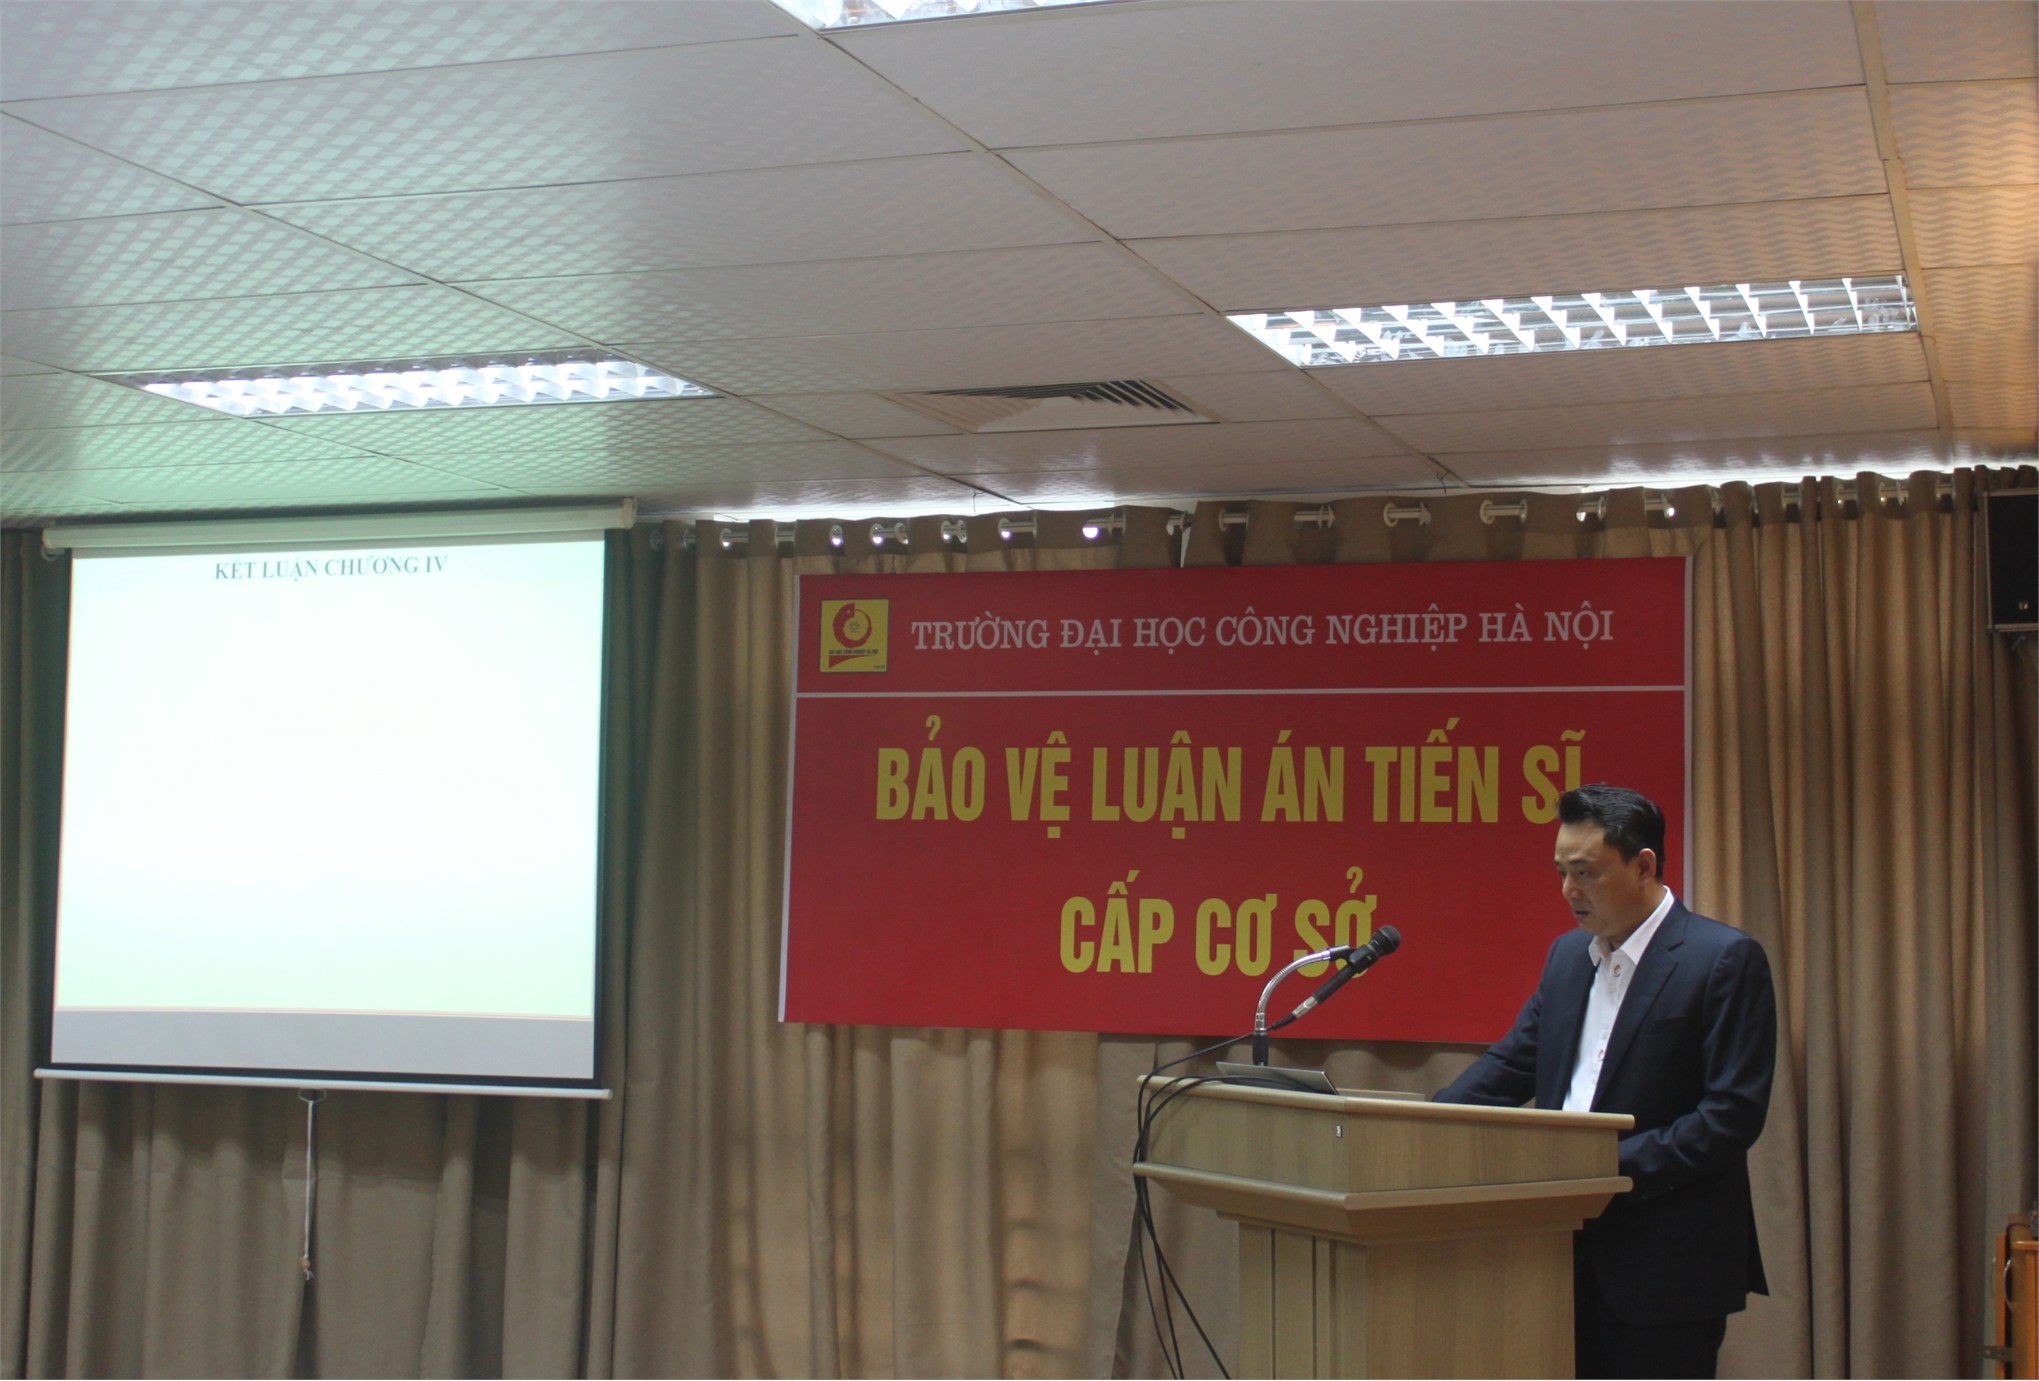 Tổ chức bảo vệ Luận án tiến sĩ cấp cơ sở cho NCS Hoàng Xuân Thịnh, ngành Kỹ thuật Cơ khí, mã số: 9520103.